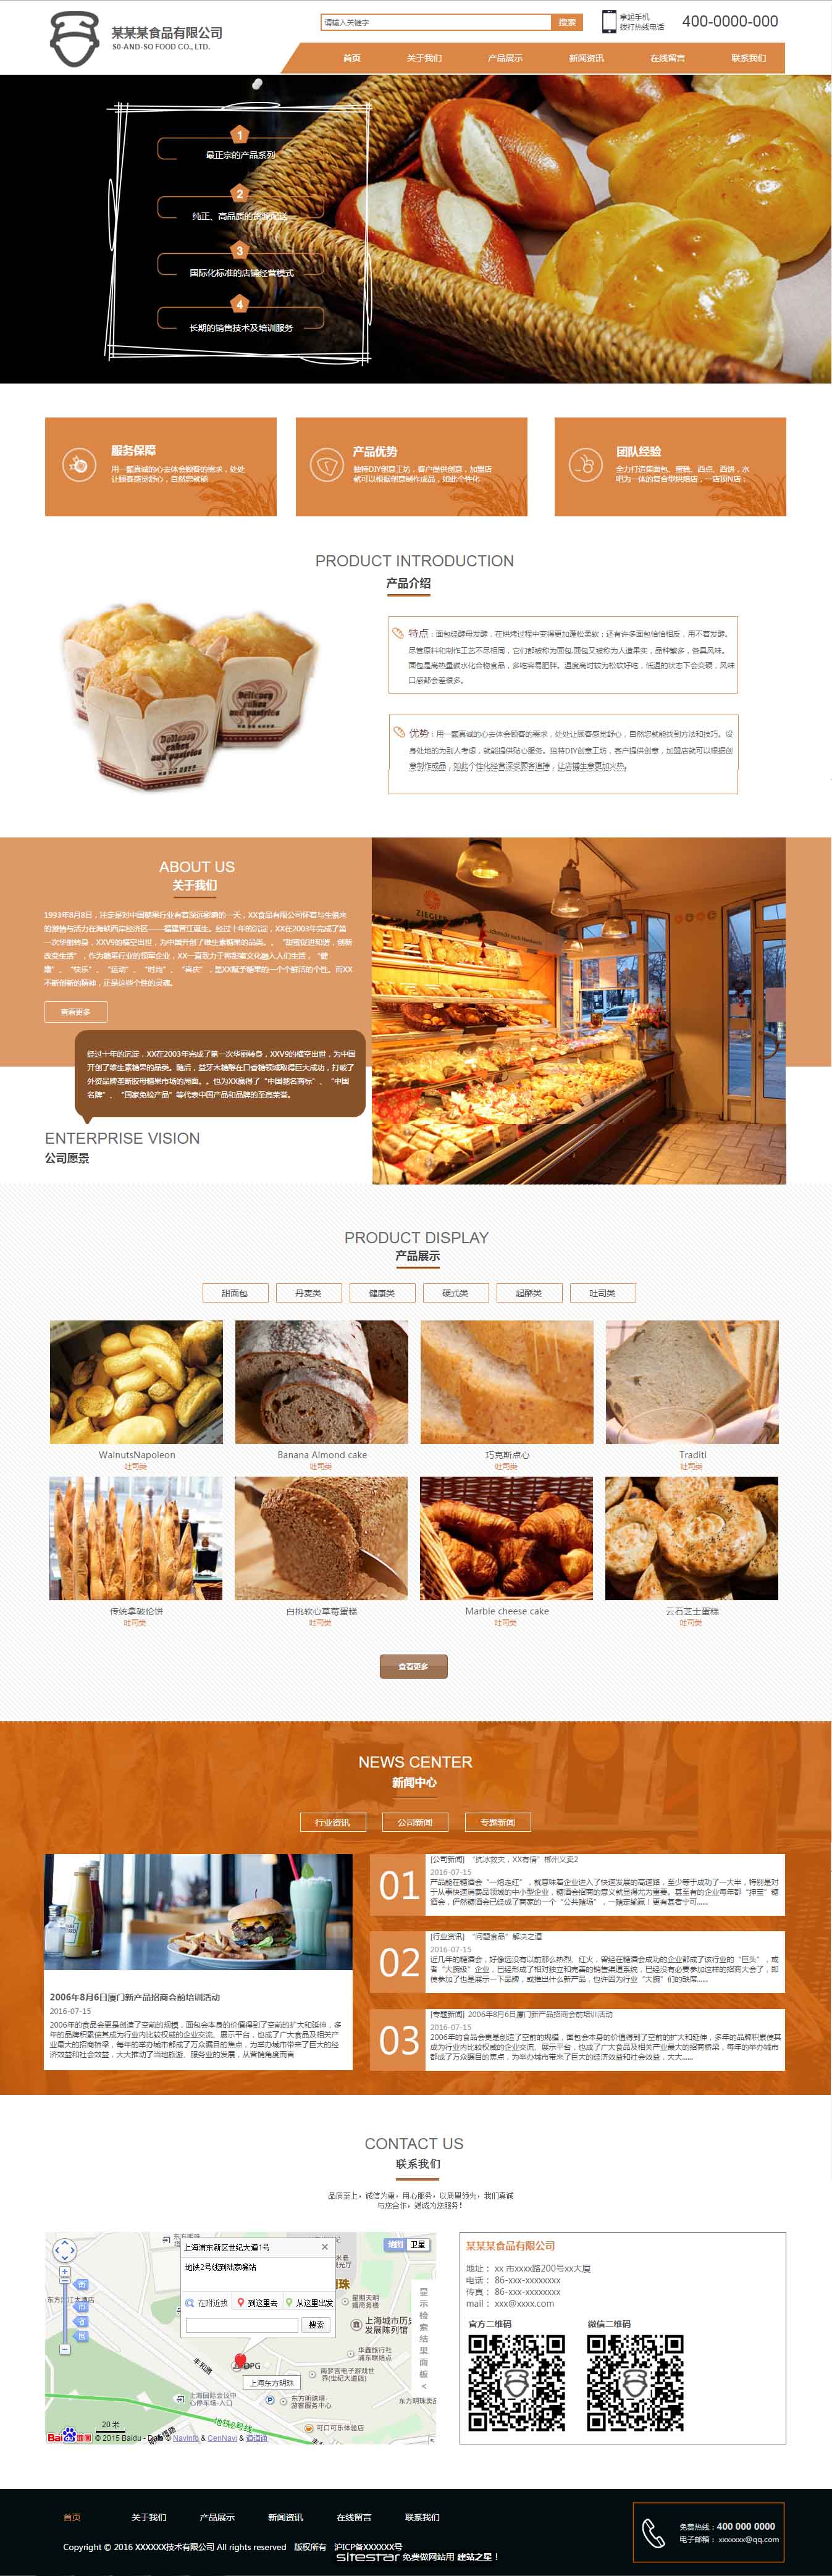 食品网站模板-food-82